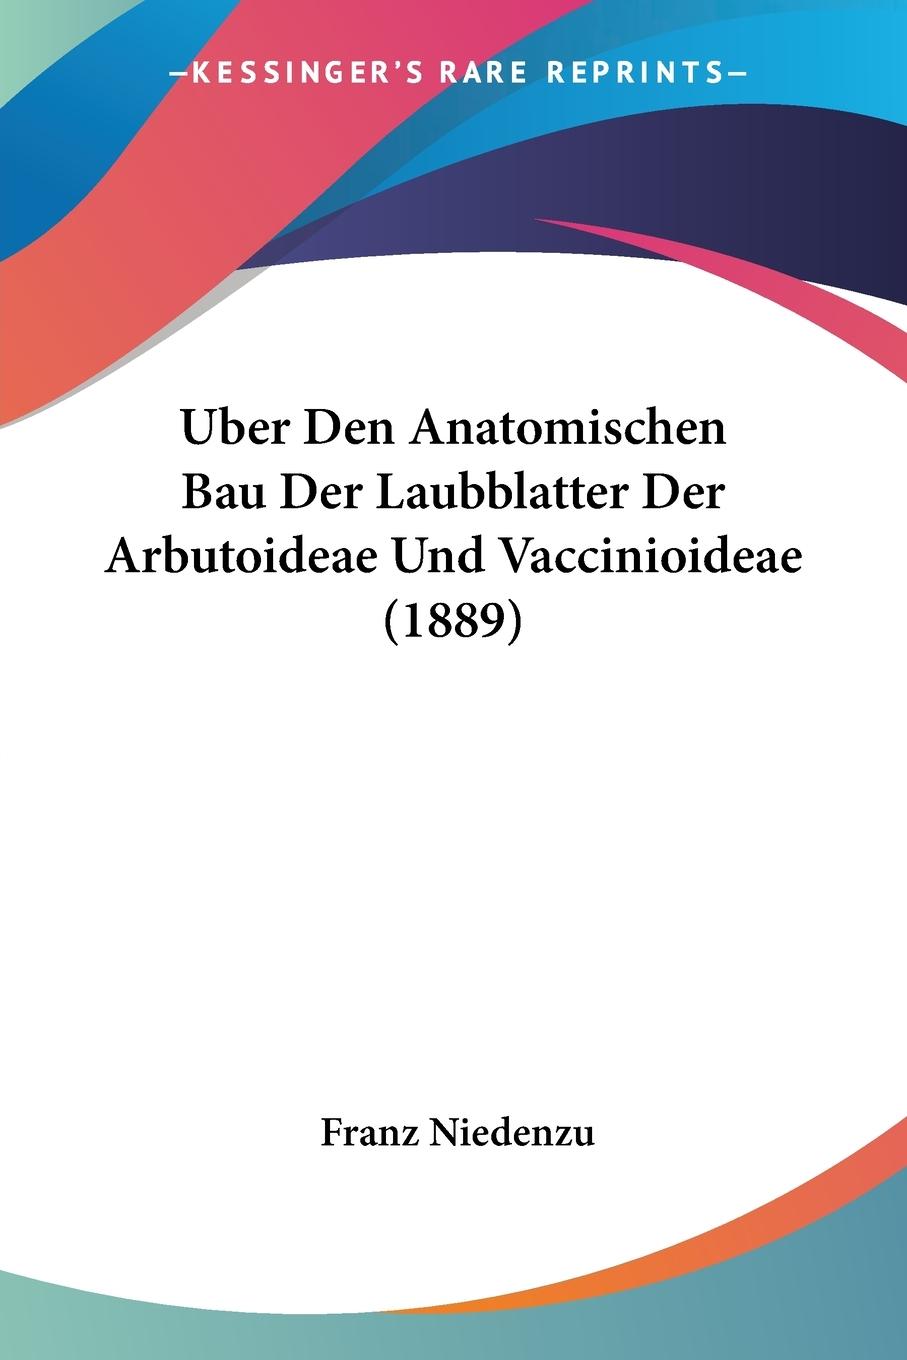 Uber Den Anatomischen Bau Der Laubblatter Der Arbutoideae Und Vaccinioideae (1889) - Niedenzu, Franz